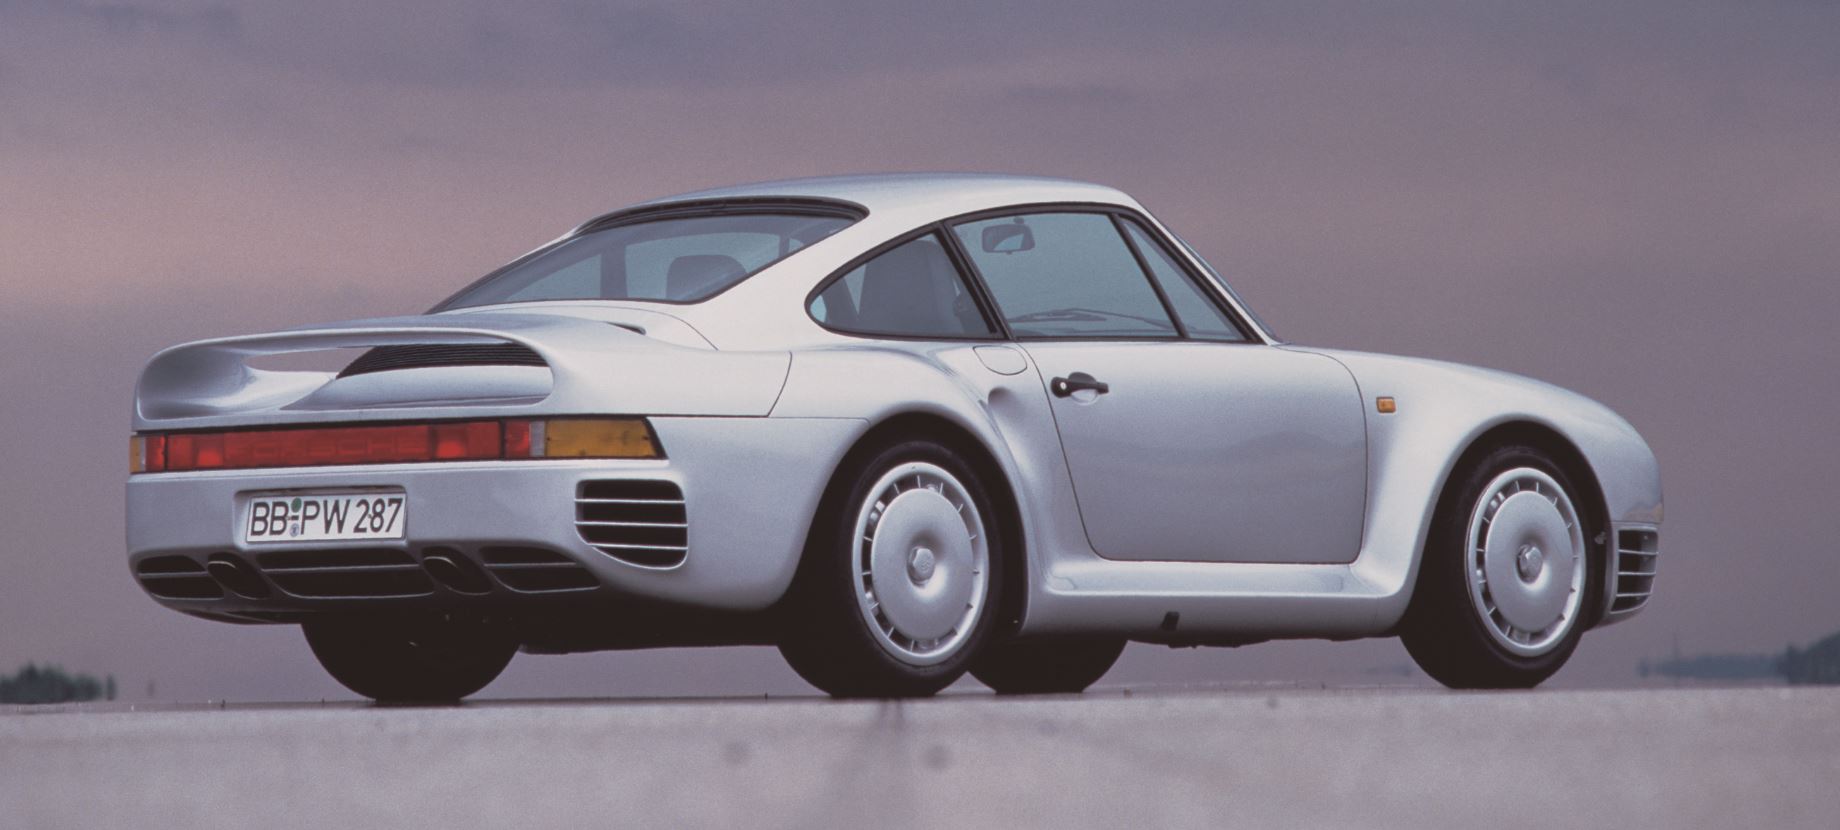 959 Porsche